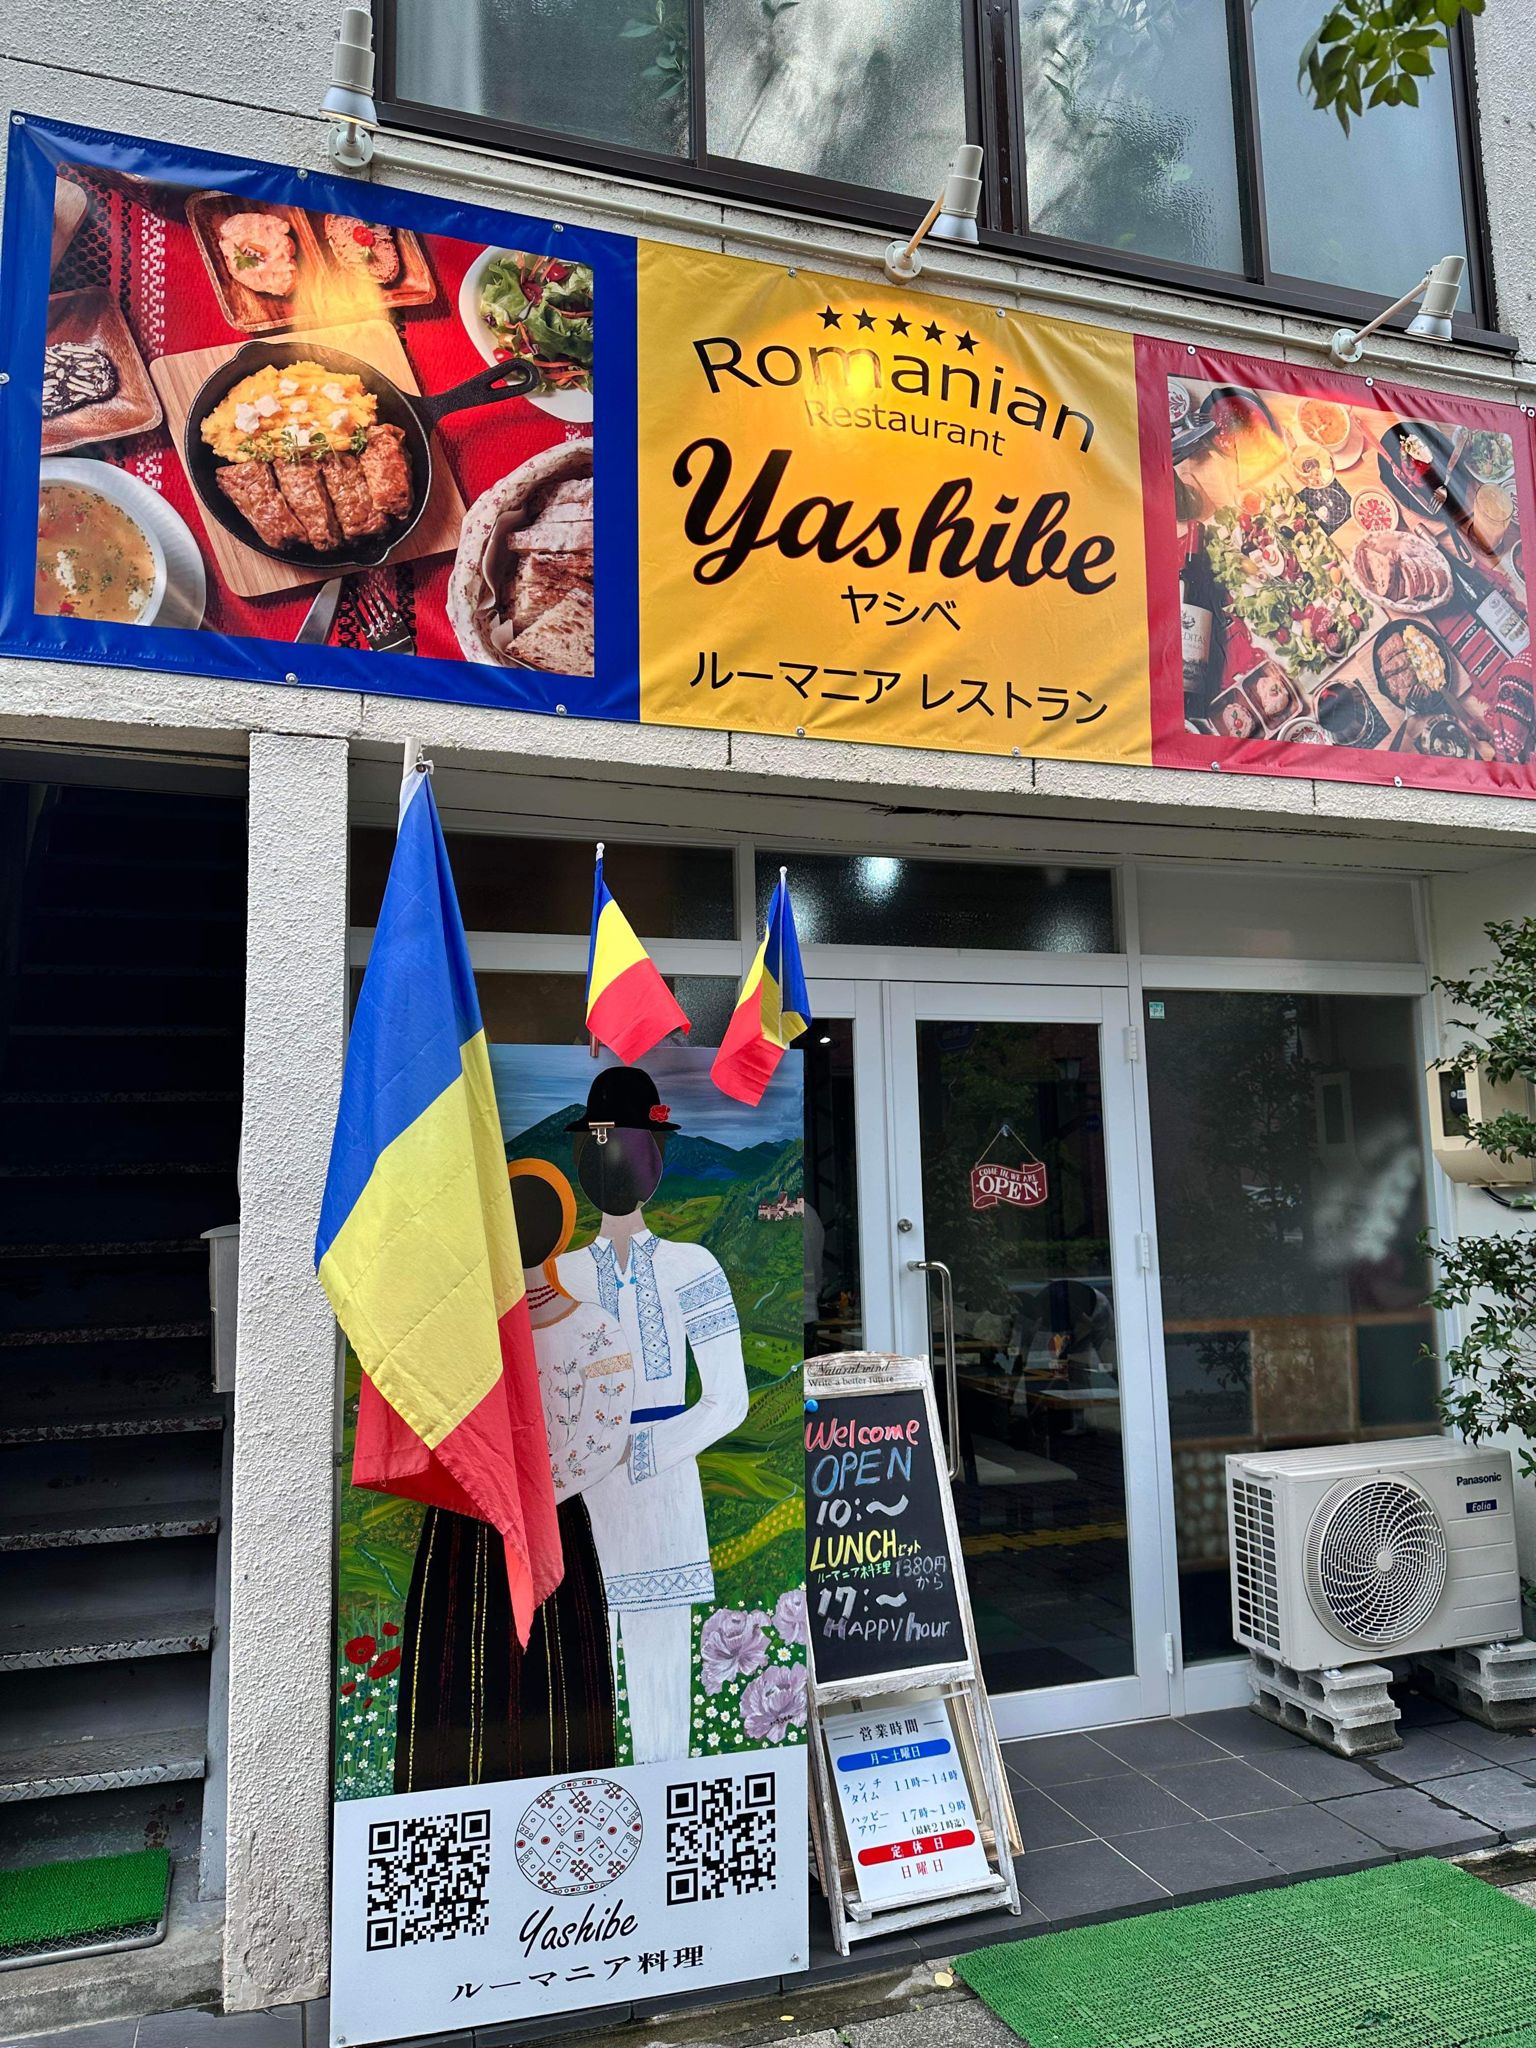 Intrarea în restaurantul românesc Yashibe (sursă foto - arhivă personală)